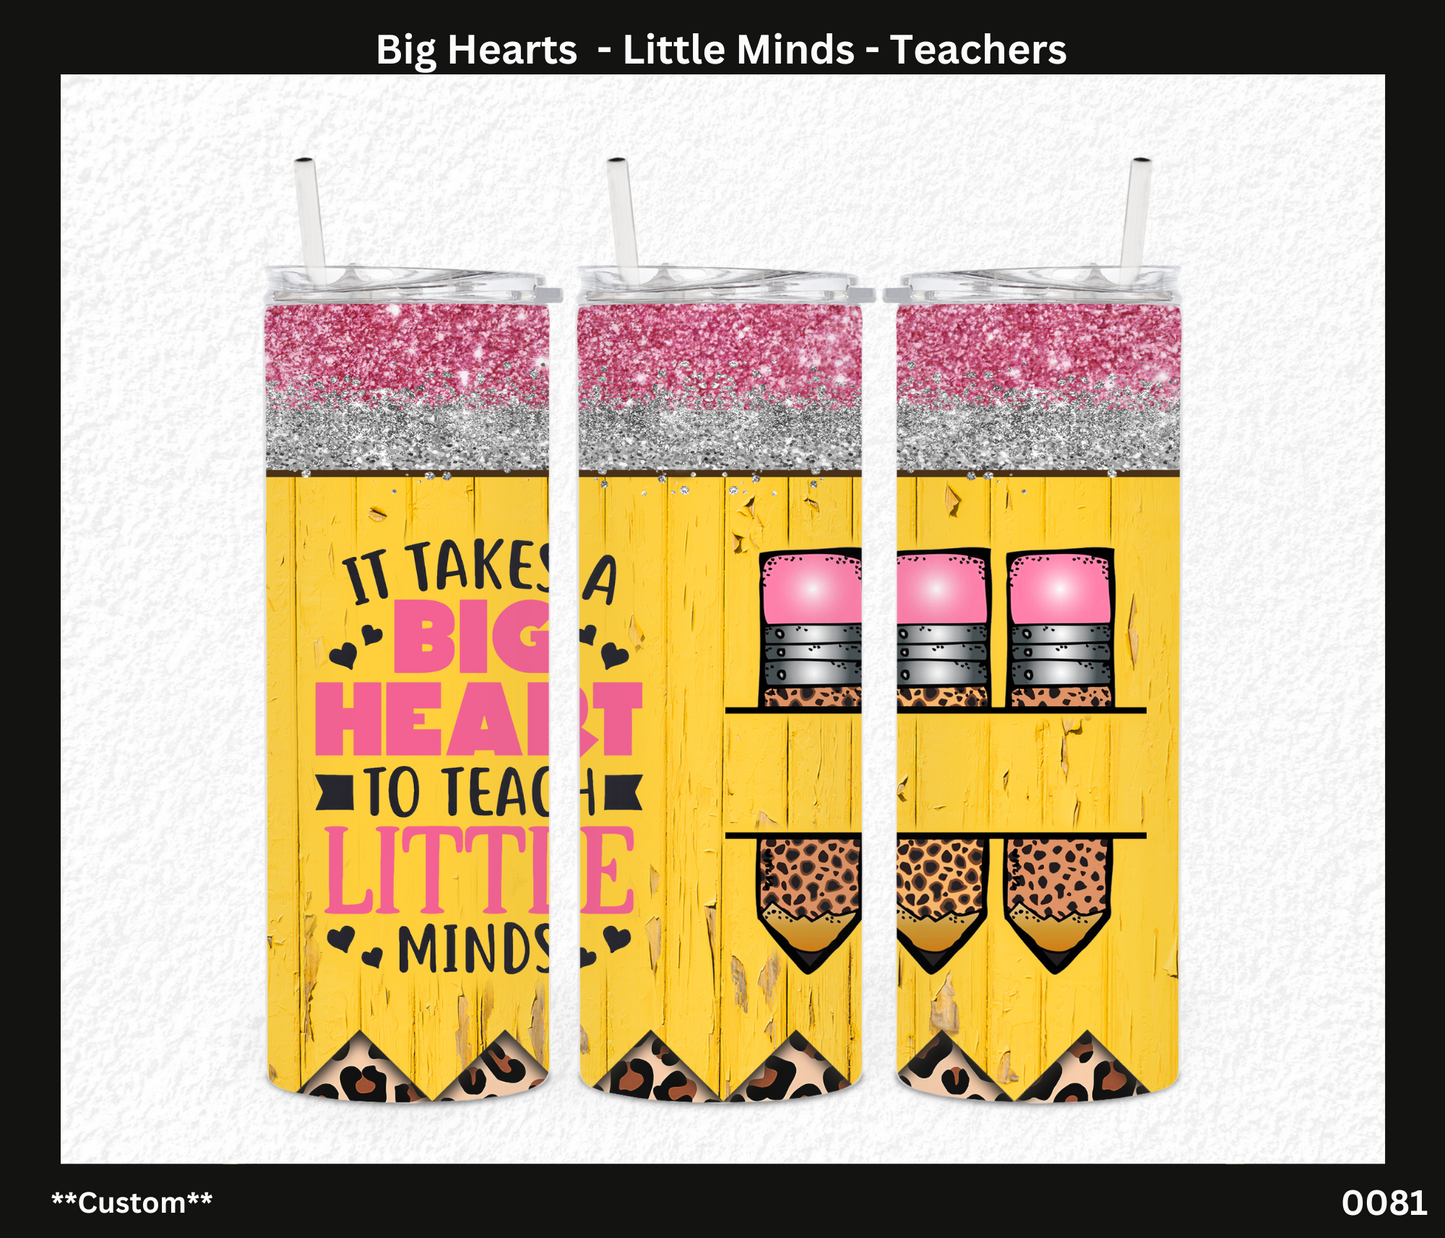 Big Hearts - Little Minds - Teachers